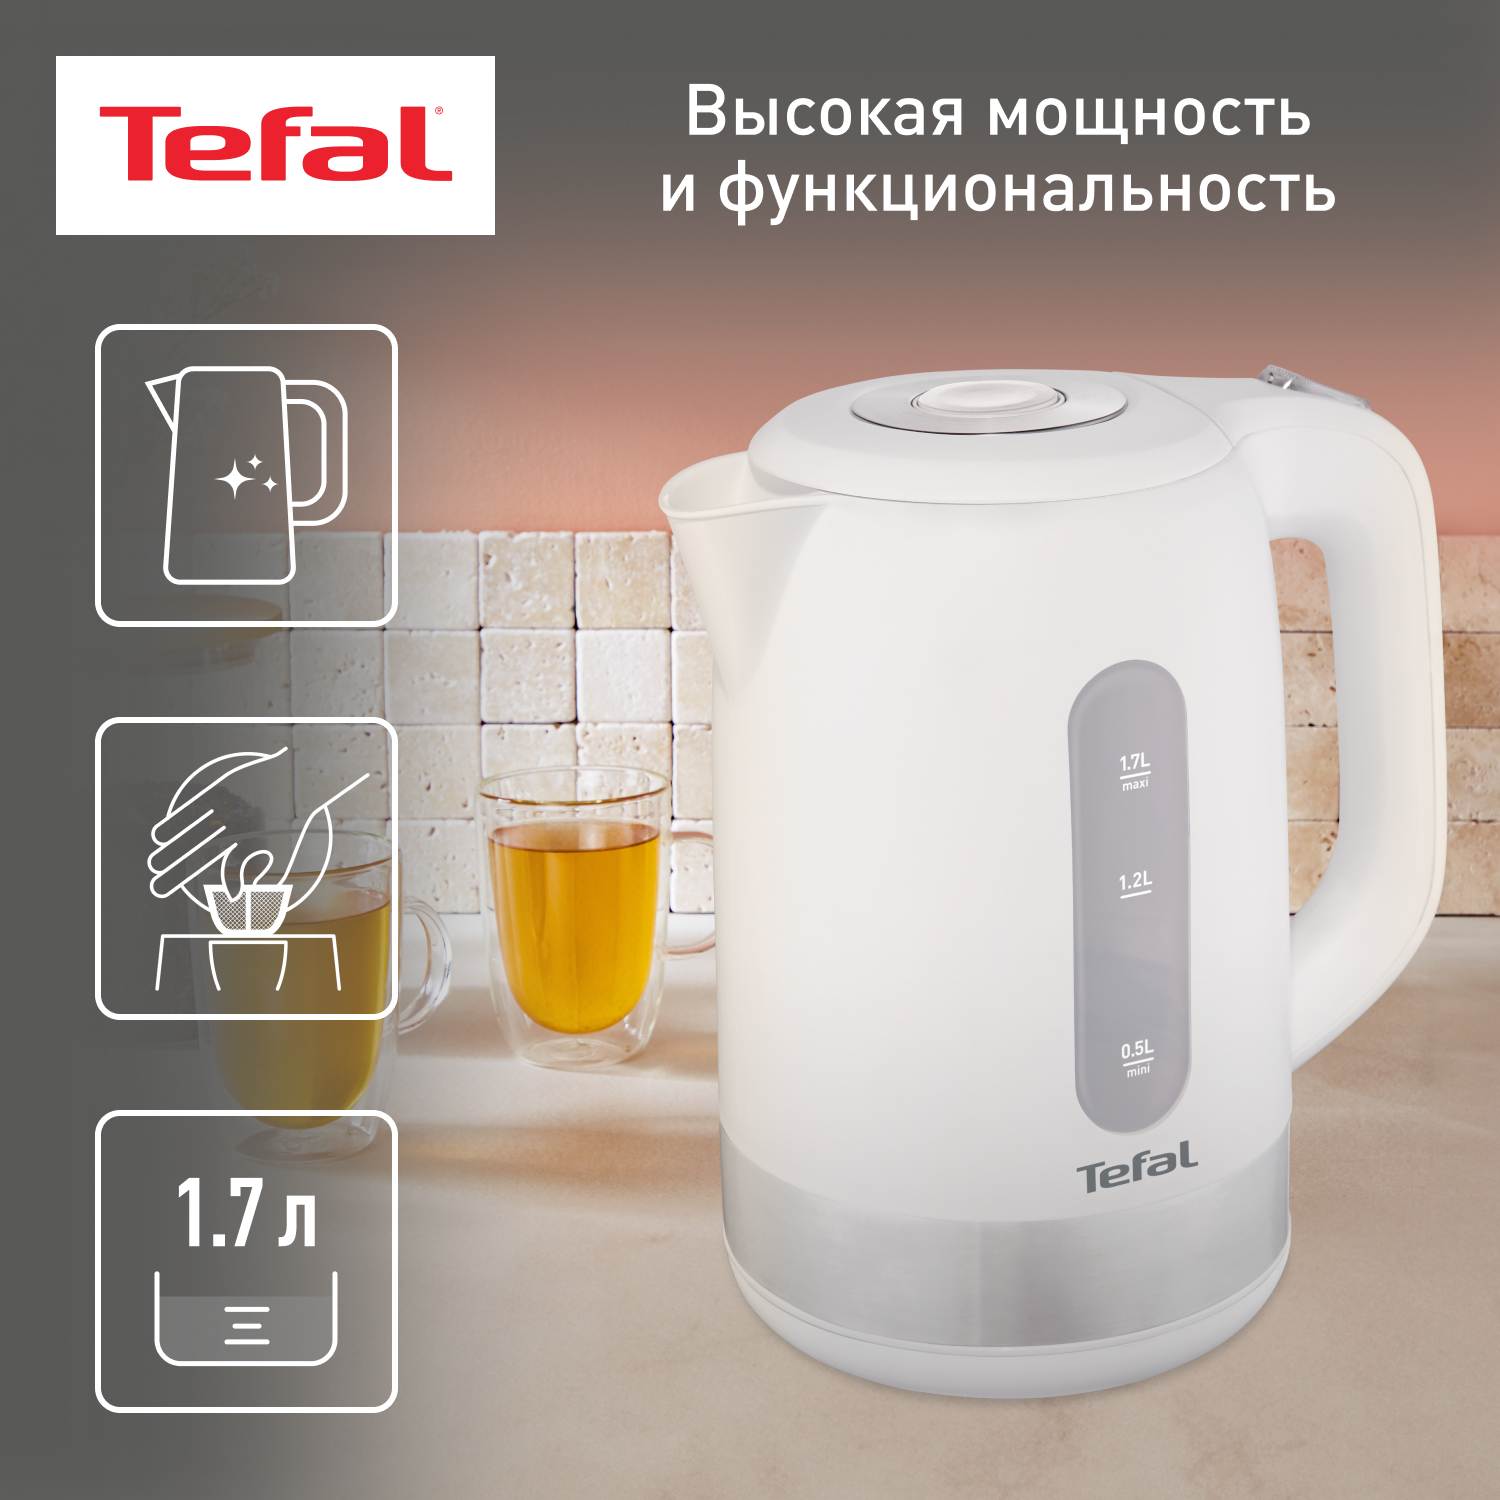 Чайник электрический Tefal KO330130 1.7 л белый, серебристый чайник электрический bosch twk 3a013 пластик 1 7 л 2400 вт